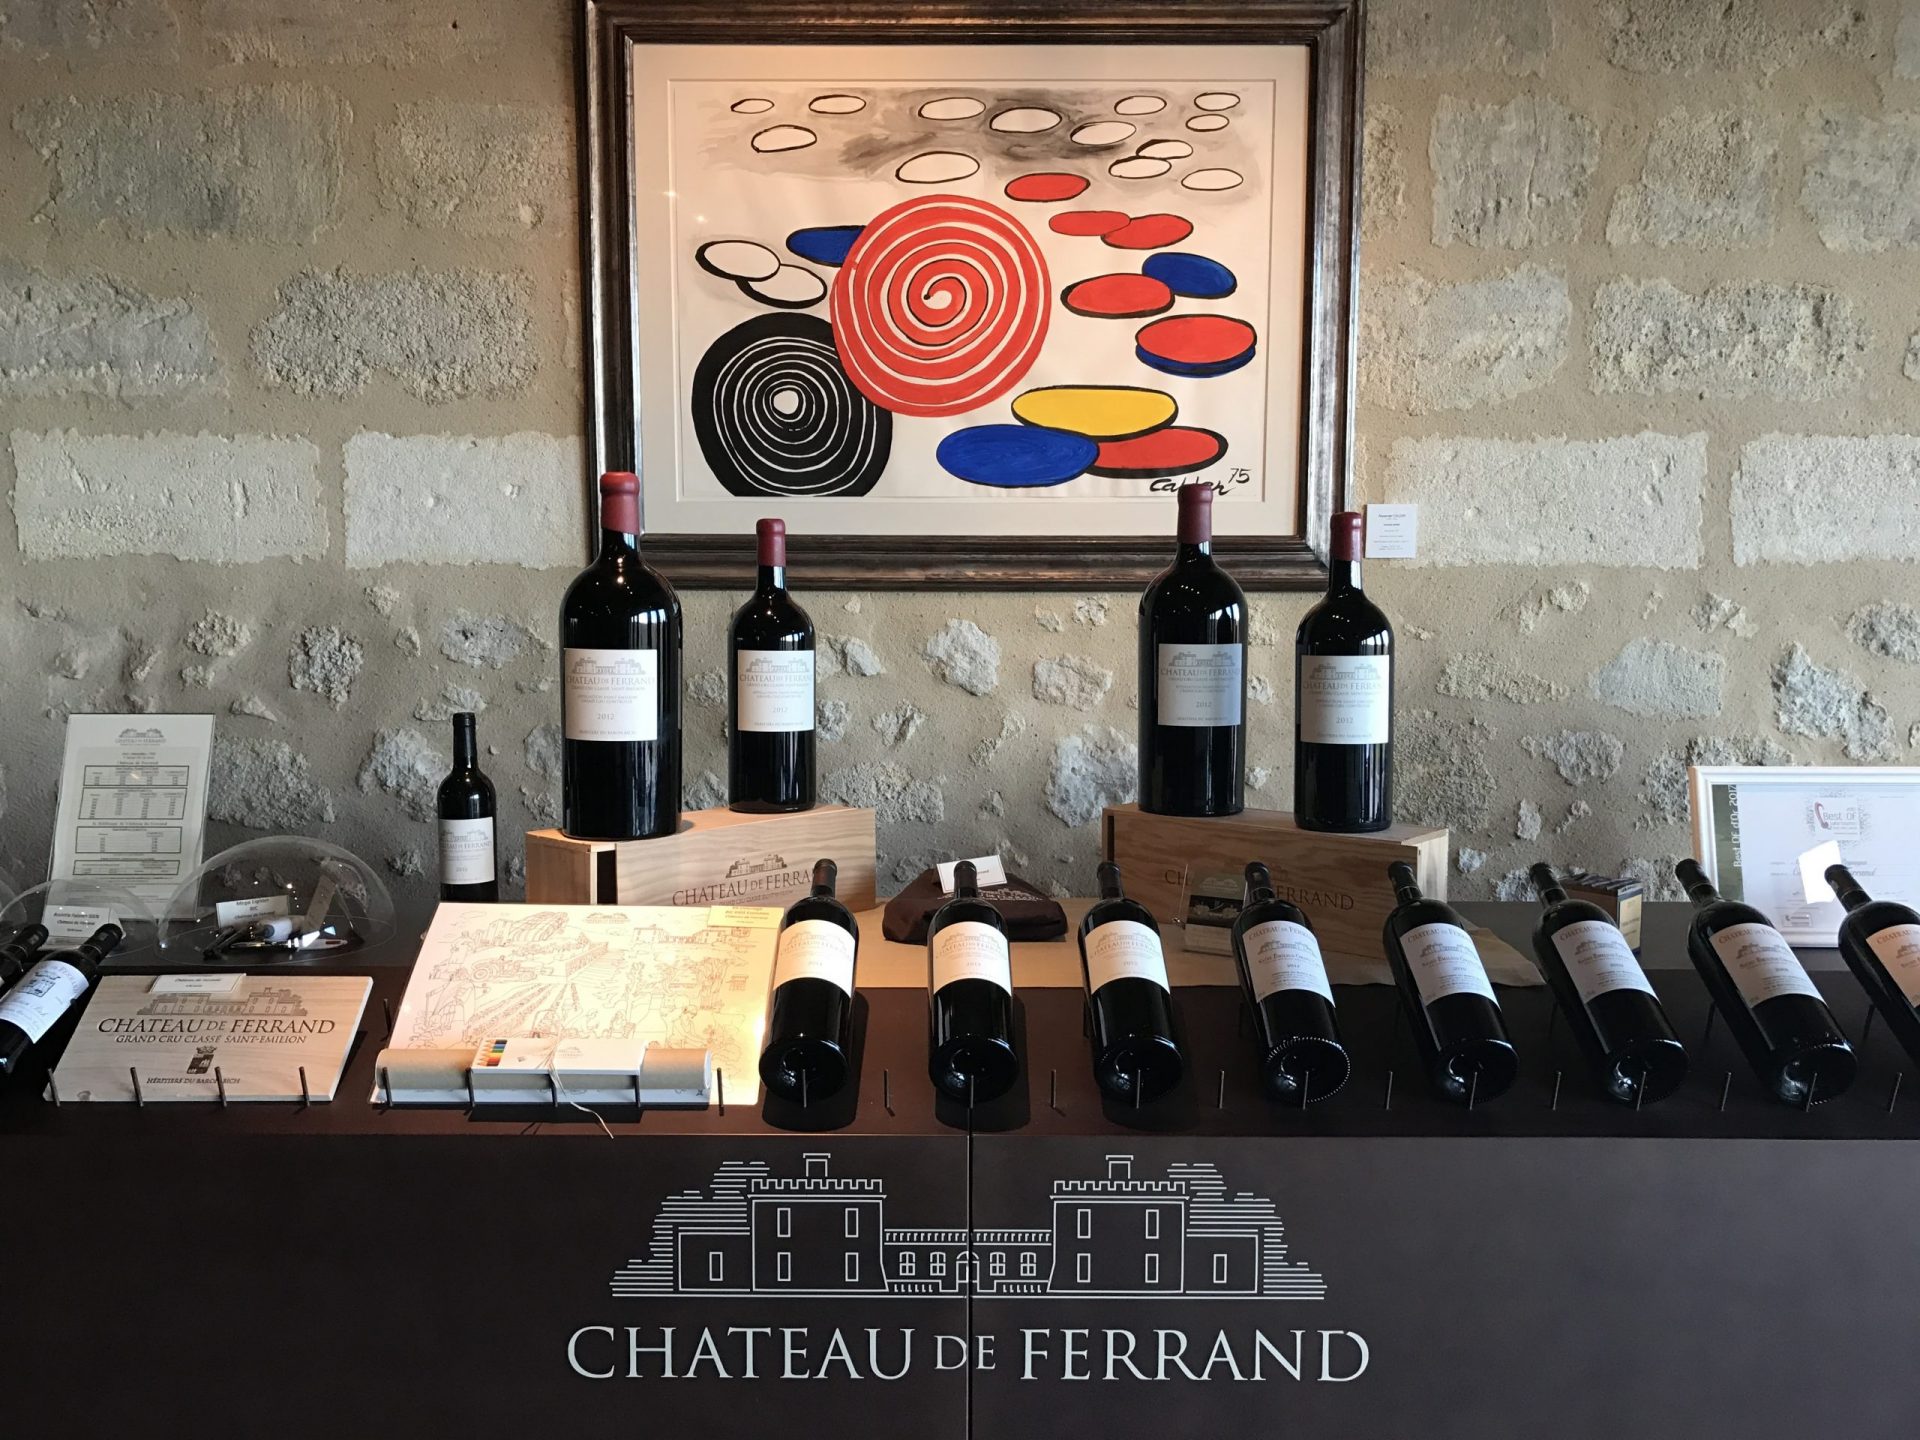 chateau de ferrand winery scaled - Bordeaux Wine Tasting Tour Including Saint Emilion, Chateau de Sales, & Chateau de Ferrand